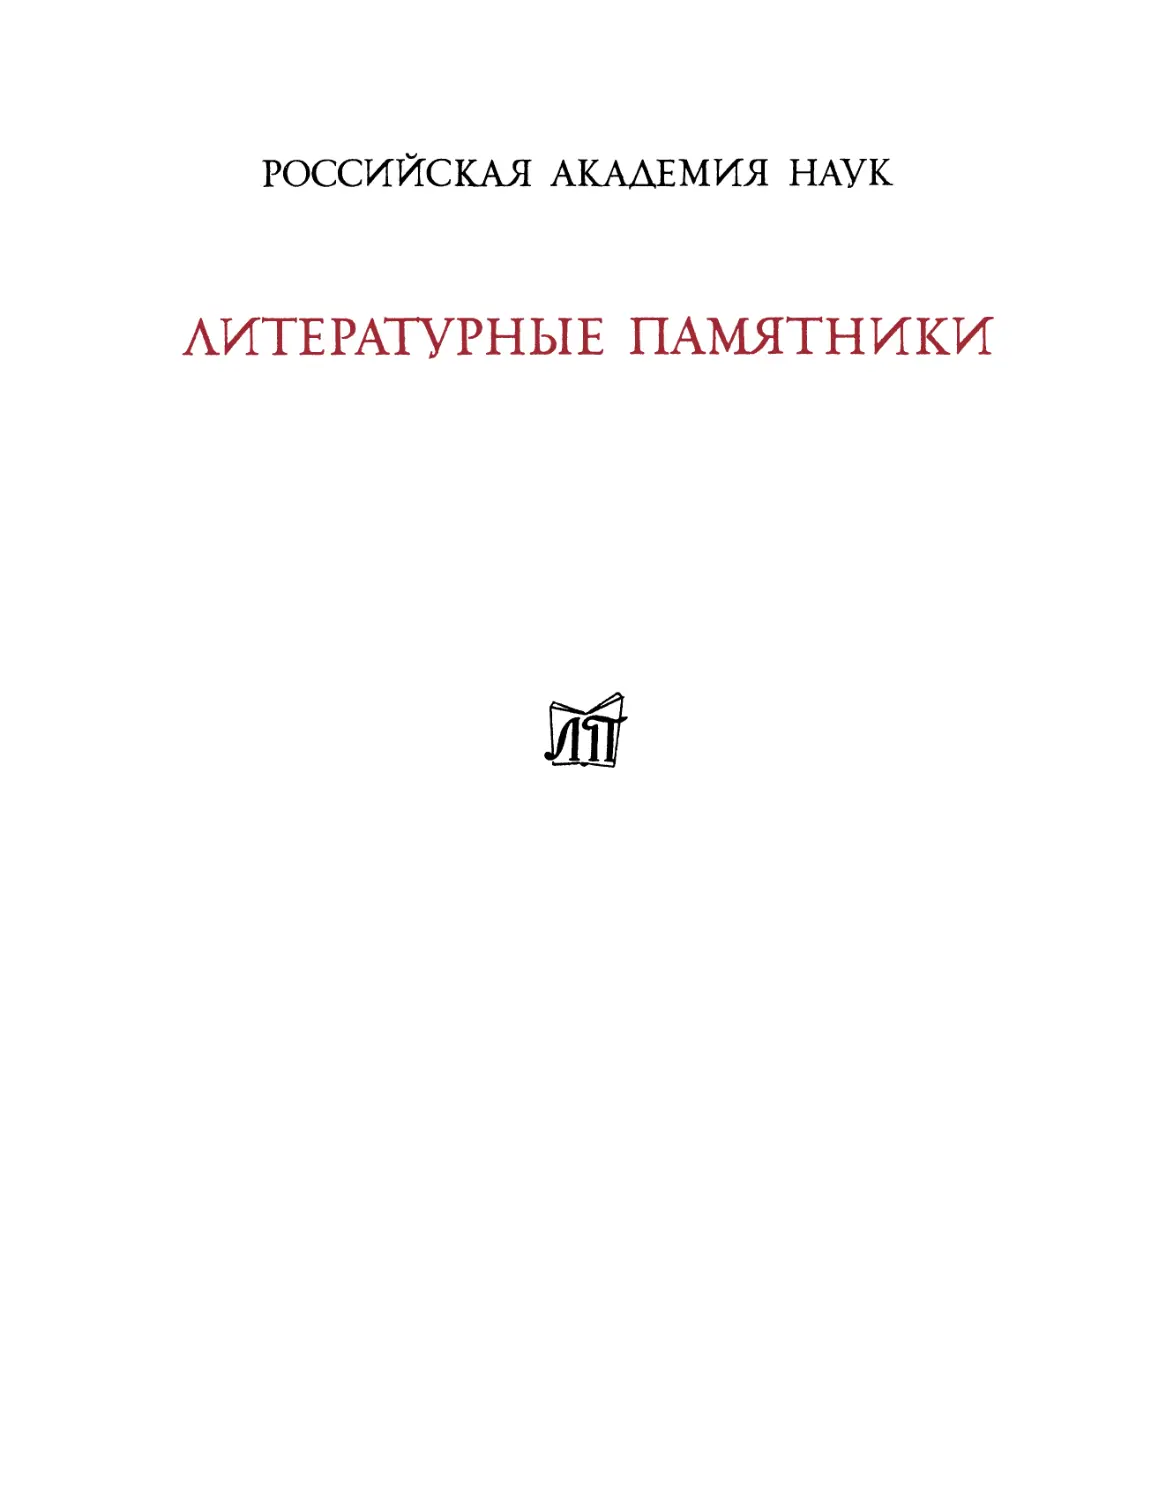 Тацит Корнелий. Сочинения. 2-е изд. - 1993